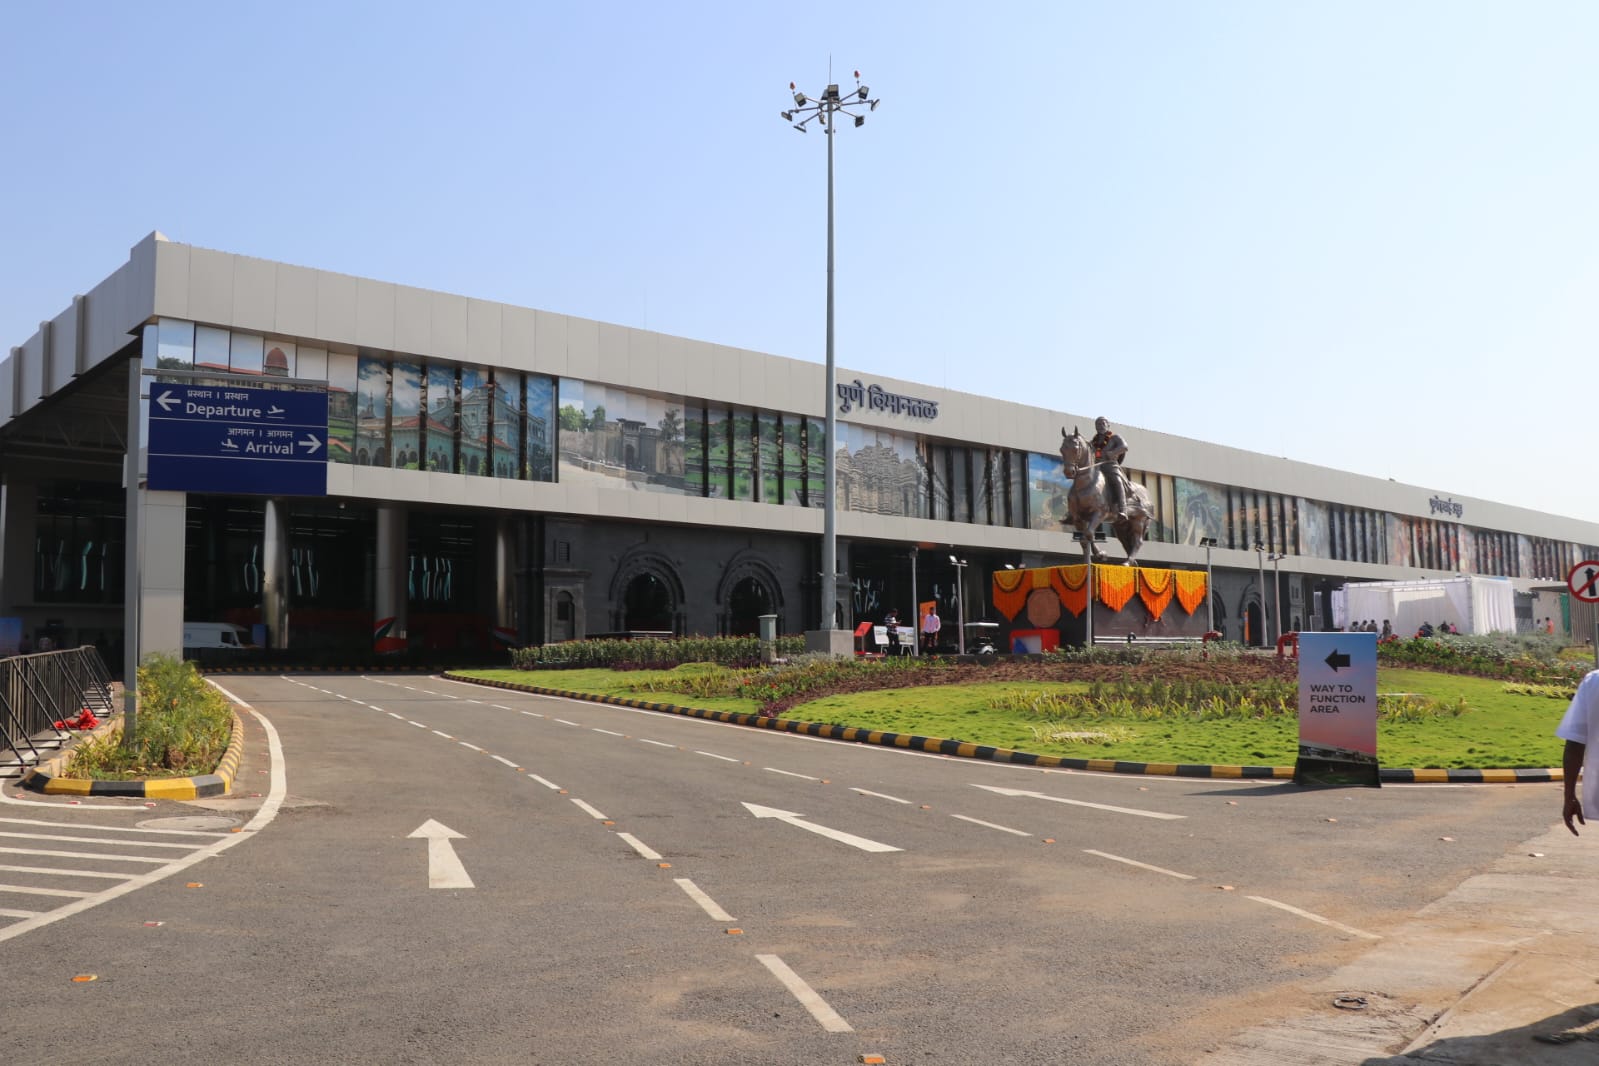 Pune Airport New Terminal | पुणे विमानतळाच्या नवीन एकात्मिक टर्मिनल इमारतीचे प्रधानमंत्री नरेंद्र मोदी यांच्या हस्ते दुरदृष्यप्रणालीद्वारे उद्घाटन